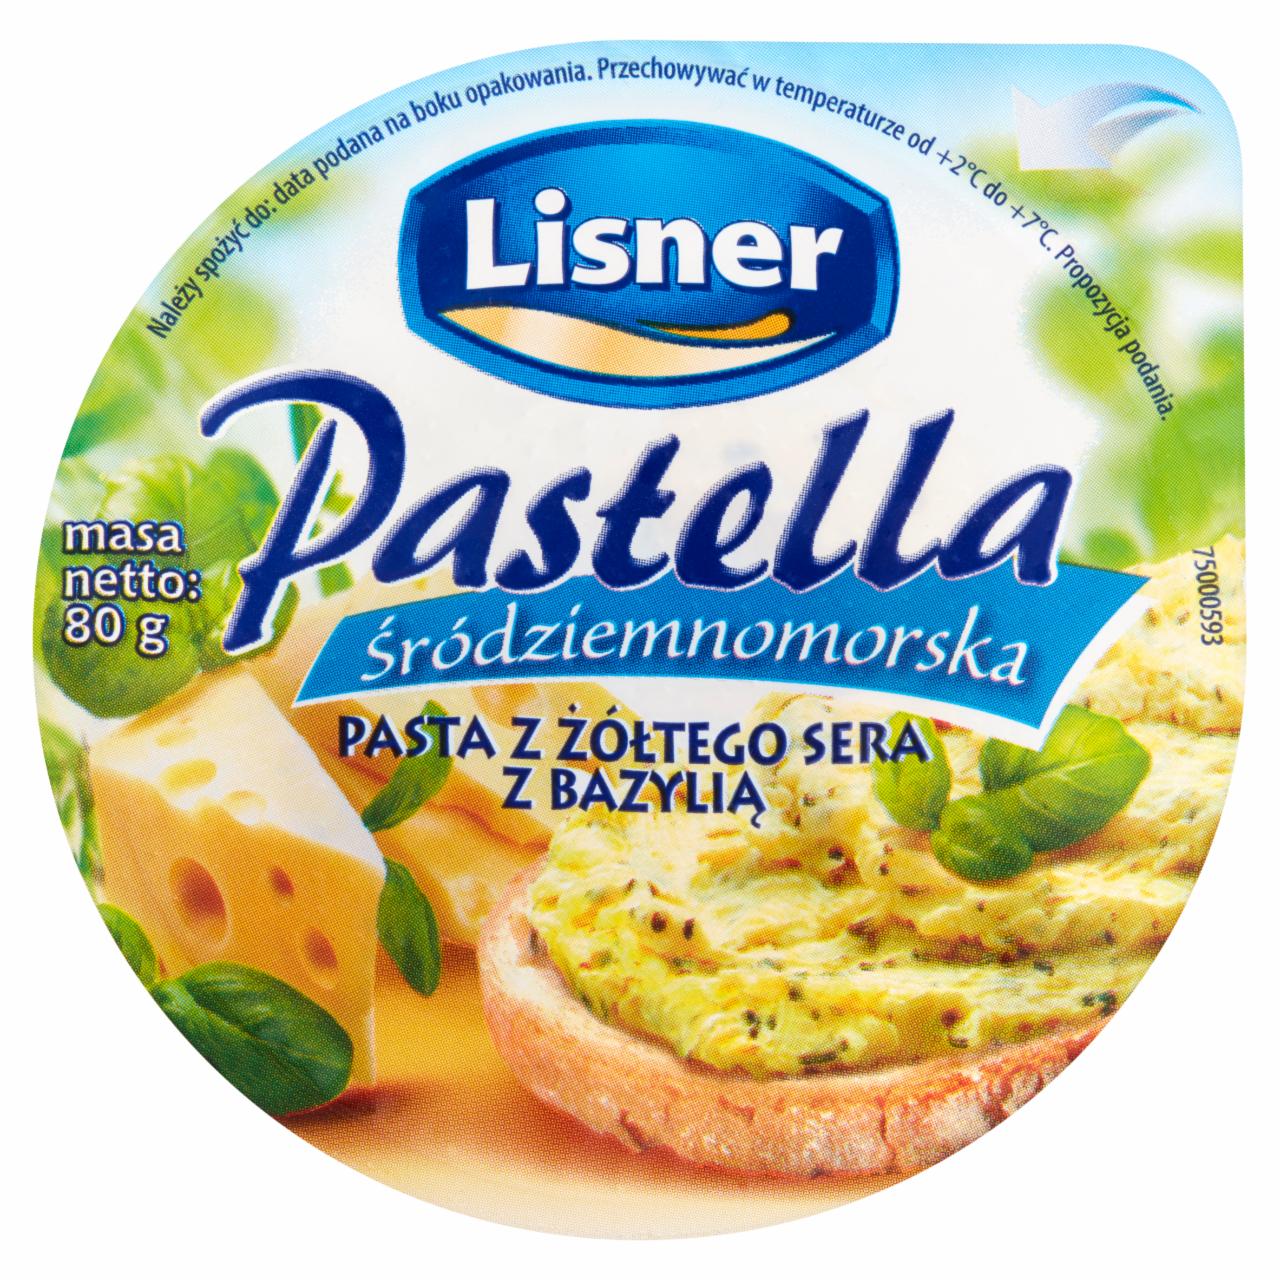 Zdjęcia - Lisner Pastella Śródziemnomorska Pasta z żółtego sera z bazylią 80 g